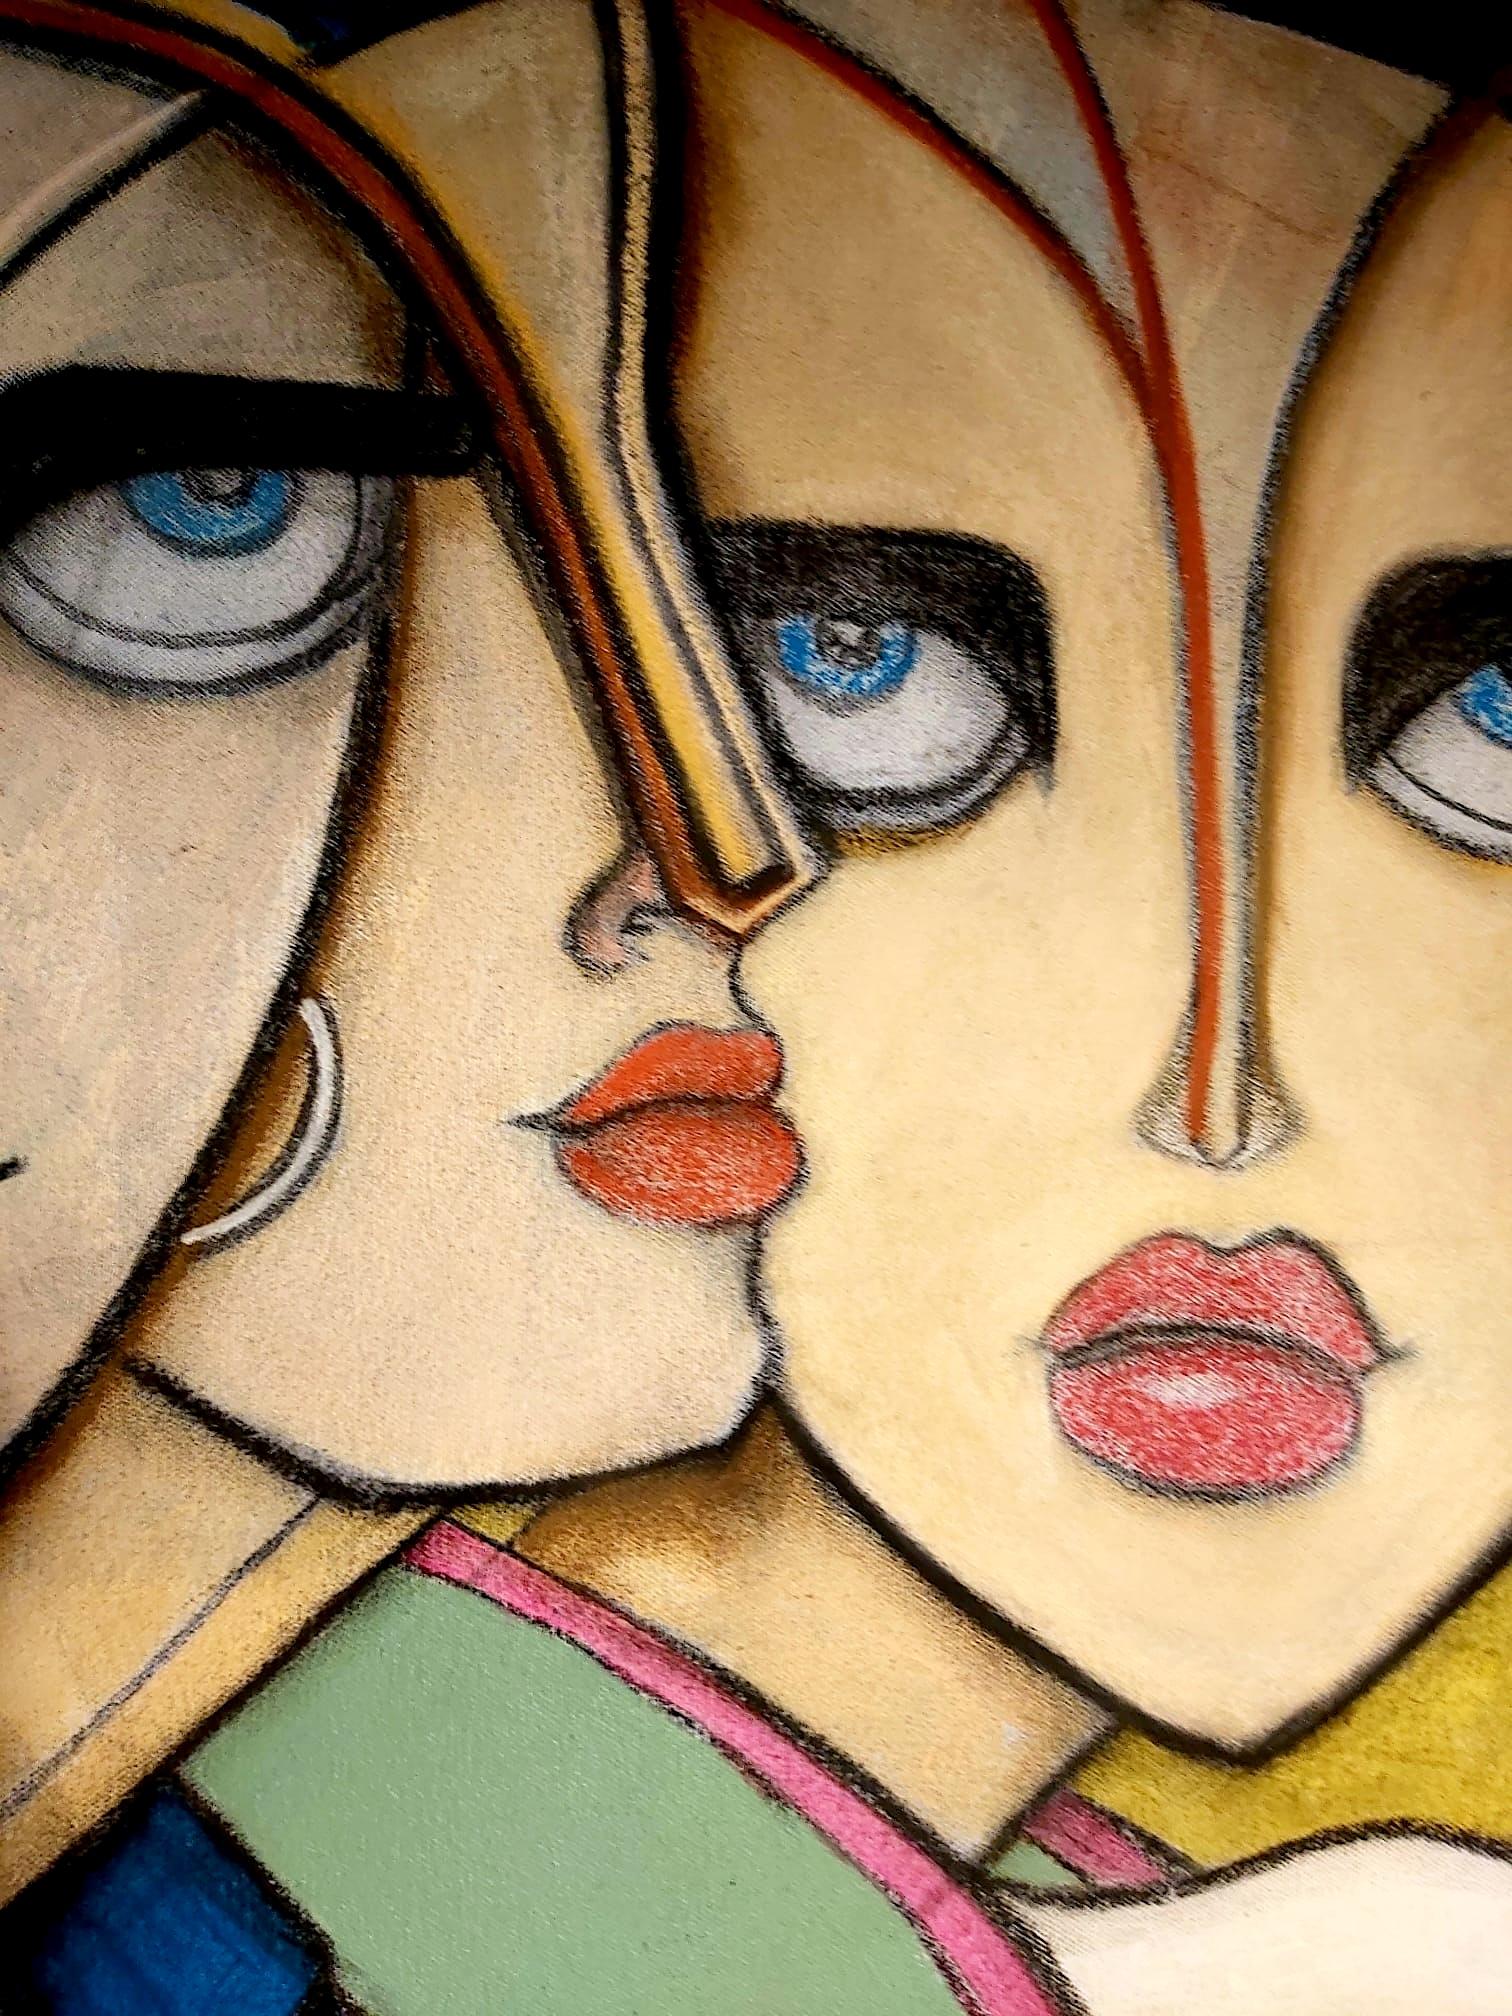 Les sœurs partant. Peinture figurative contemporaine en techniques mixtes - Painting de Samantha Millington